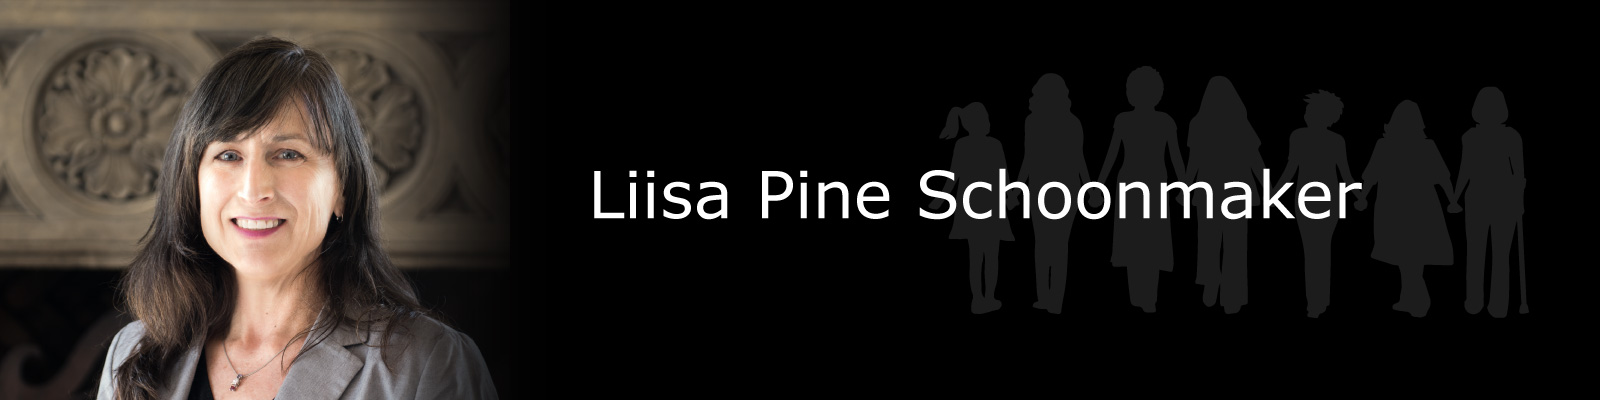 Photo of Liisa Pine Schoonmaker.